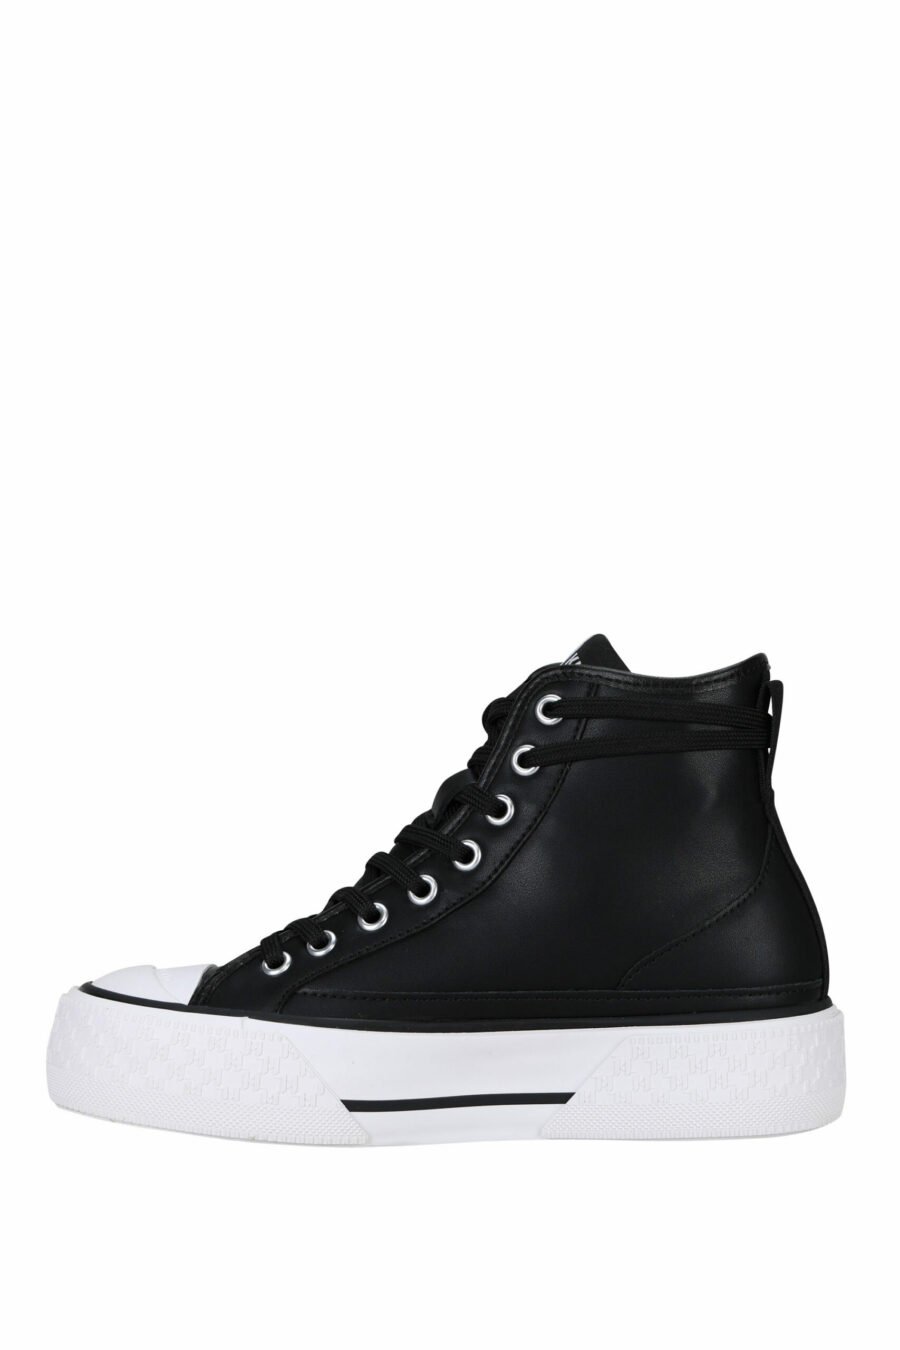 Zapatillas negras altas de cuero con suela blanca y logo "karl" - 5059529355905 2 scaled